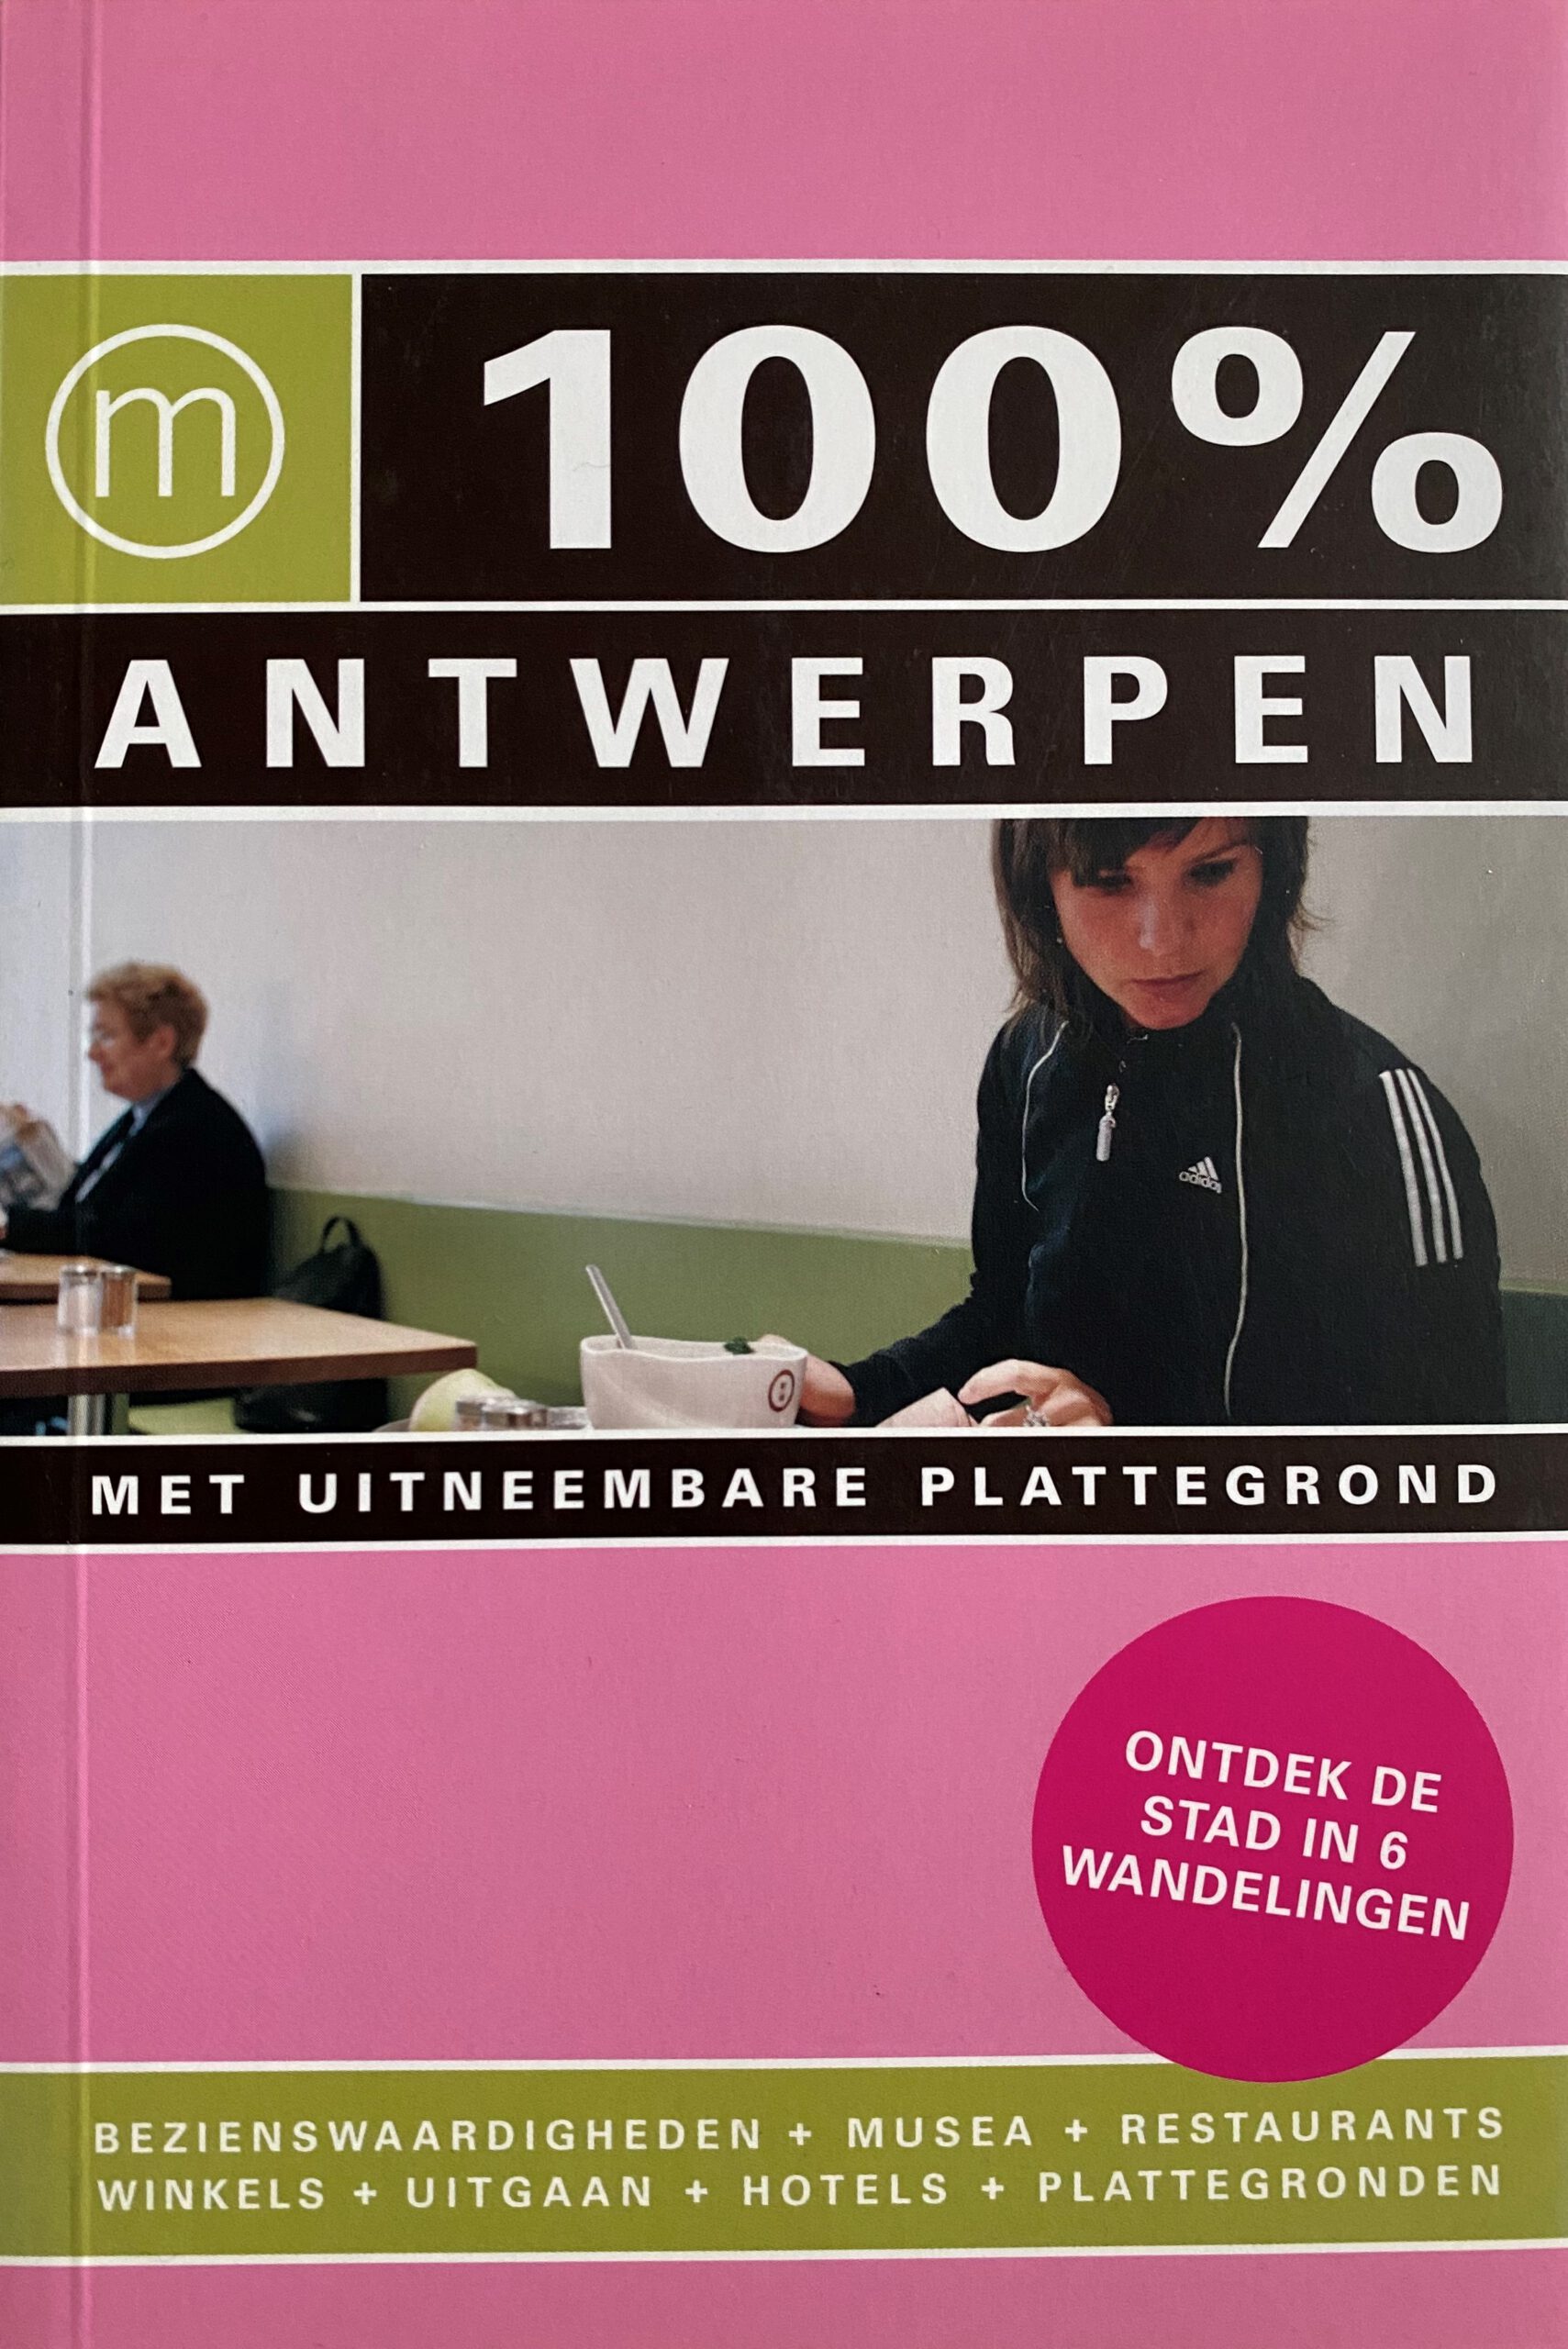 Boek Antwerpen wwwcompany.nl